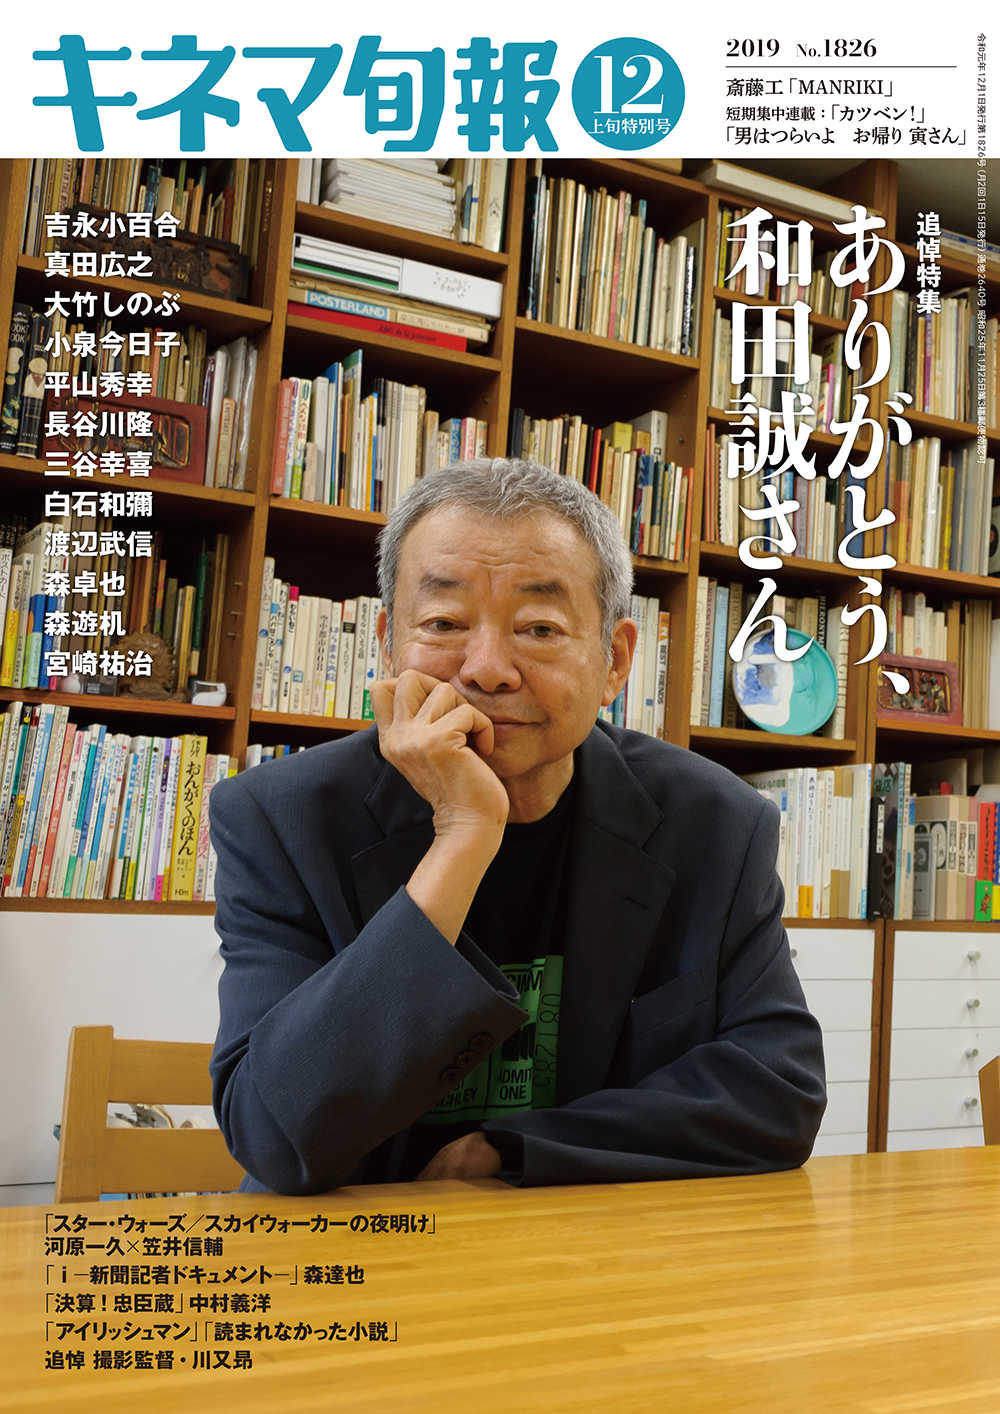 和田誠さん追悼特集の『キネマ旬報』本日発売